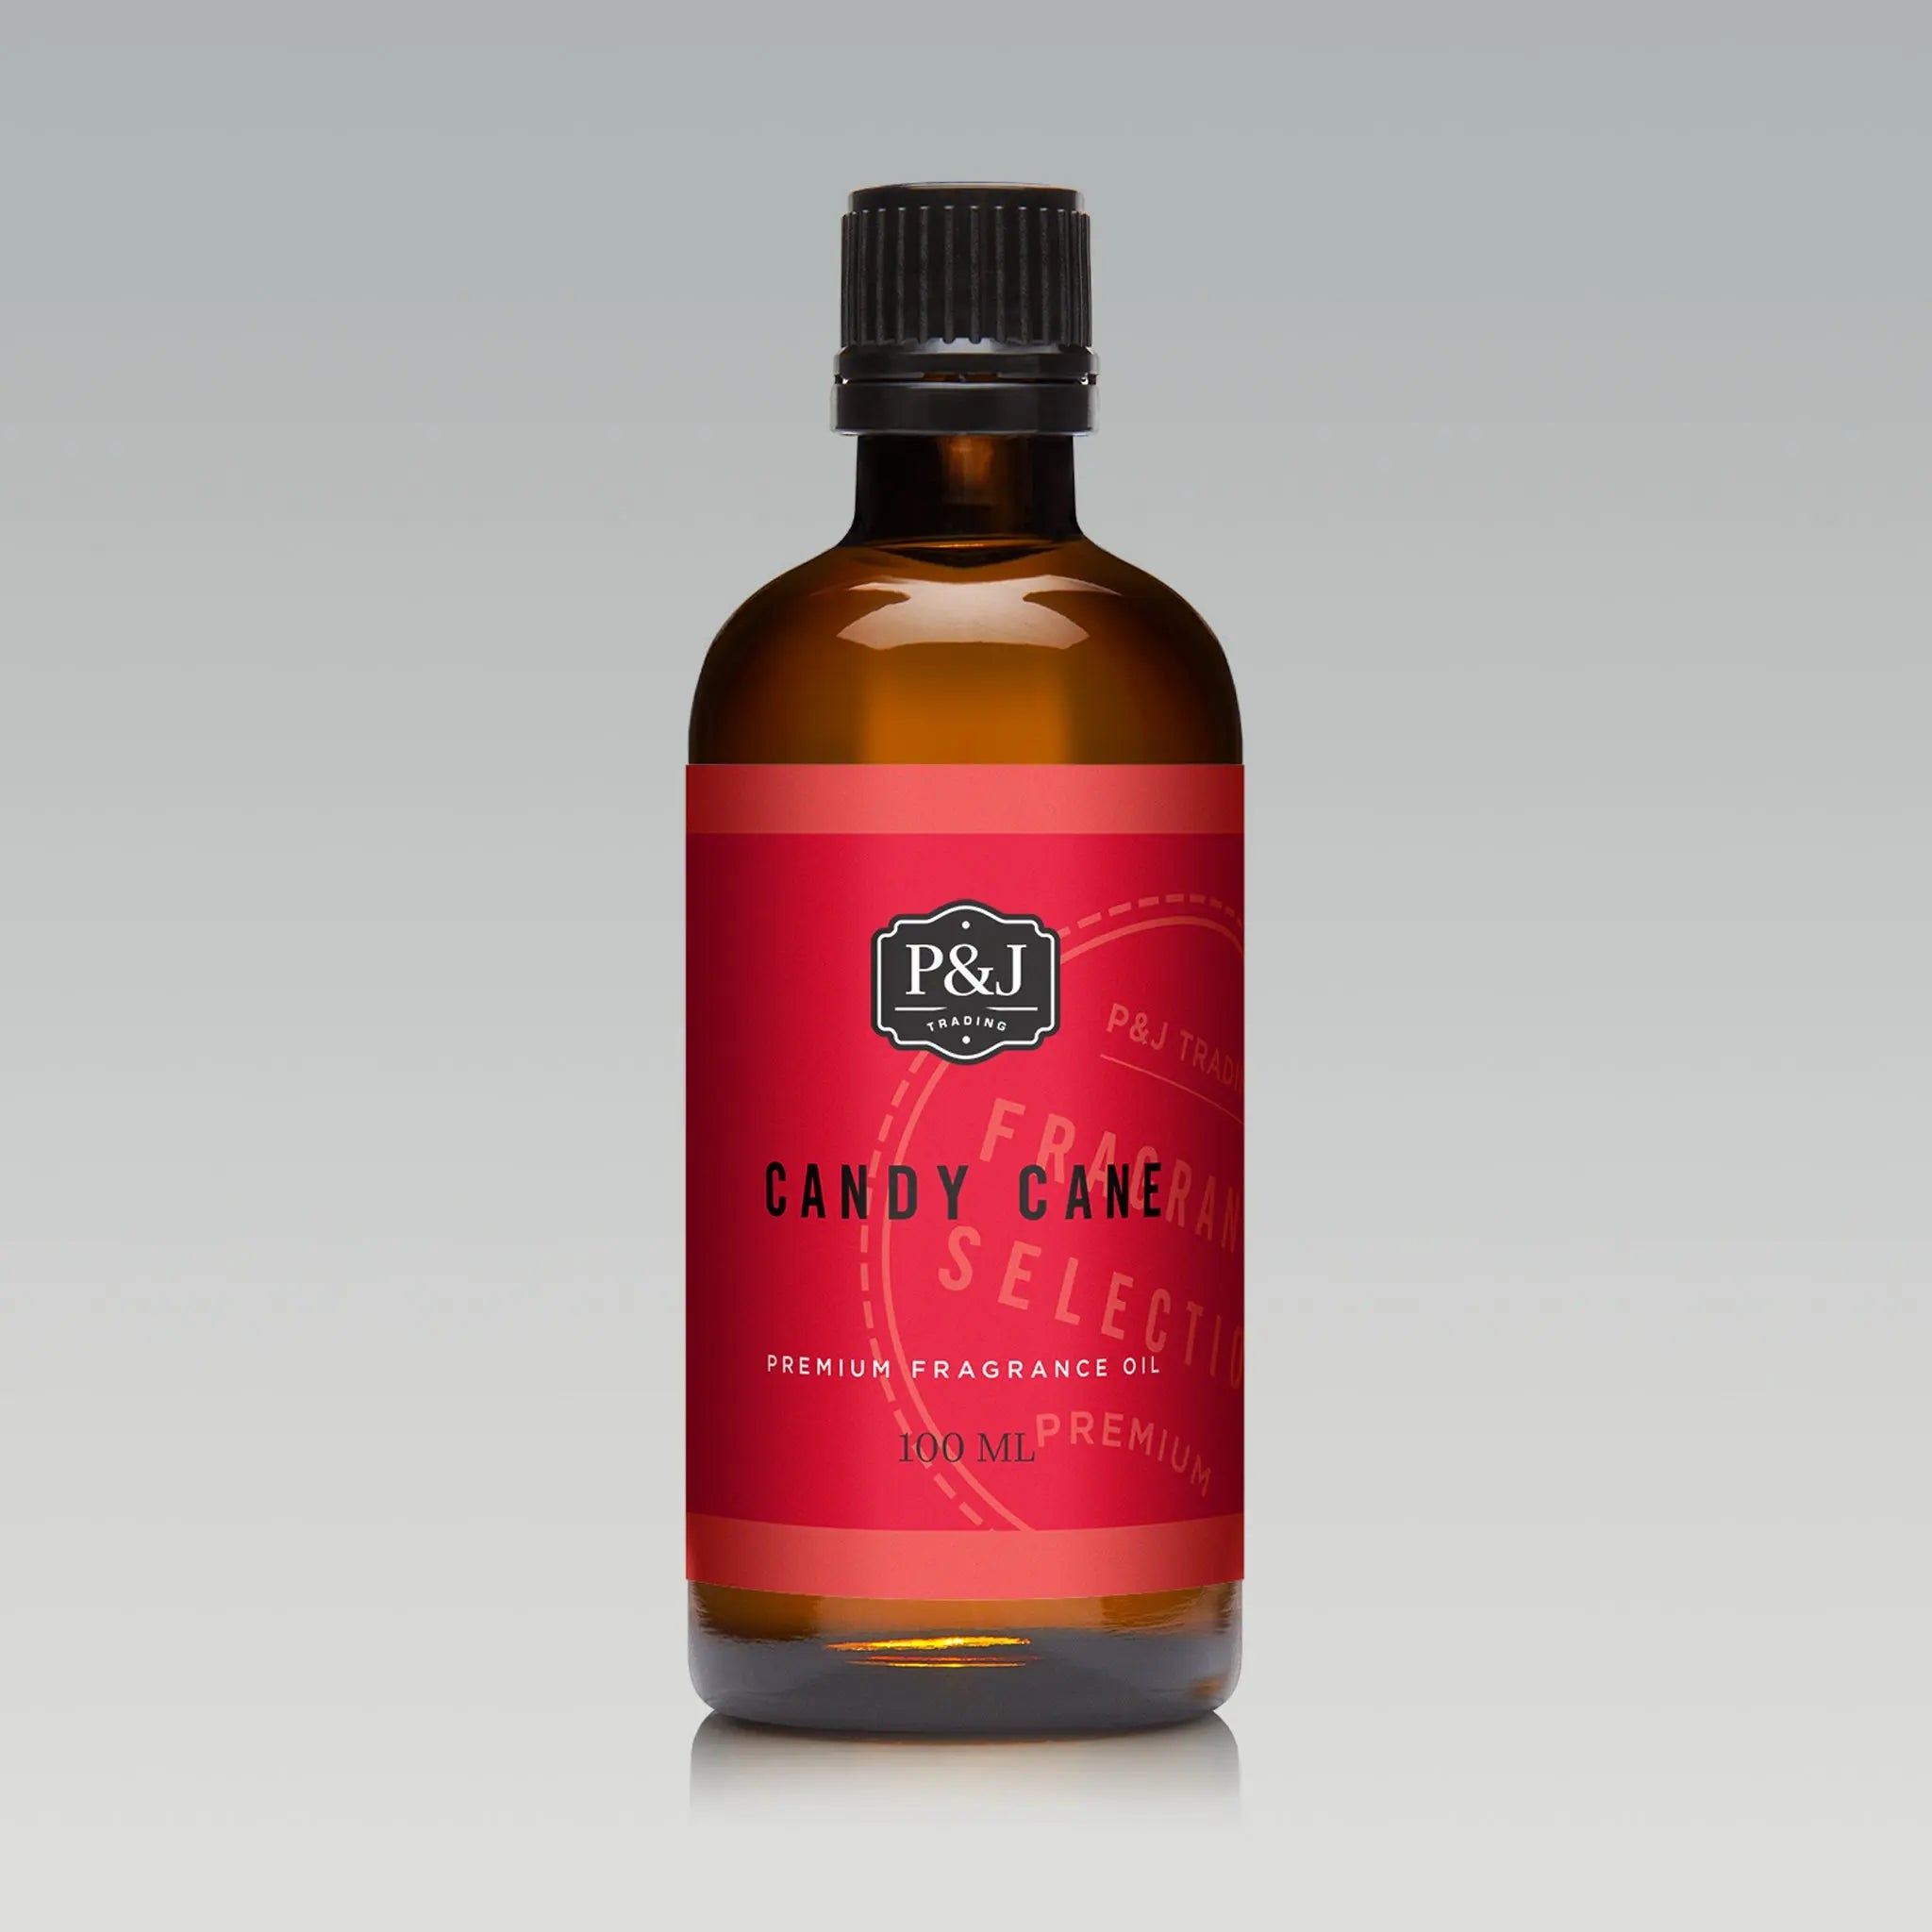 Strawberry Fragrance Oil - Premium Grade Scented Oil - 100ml